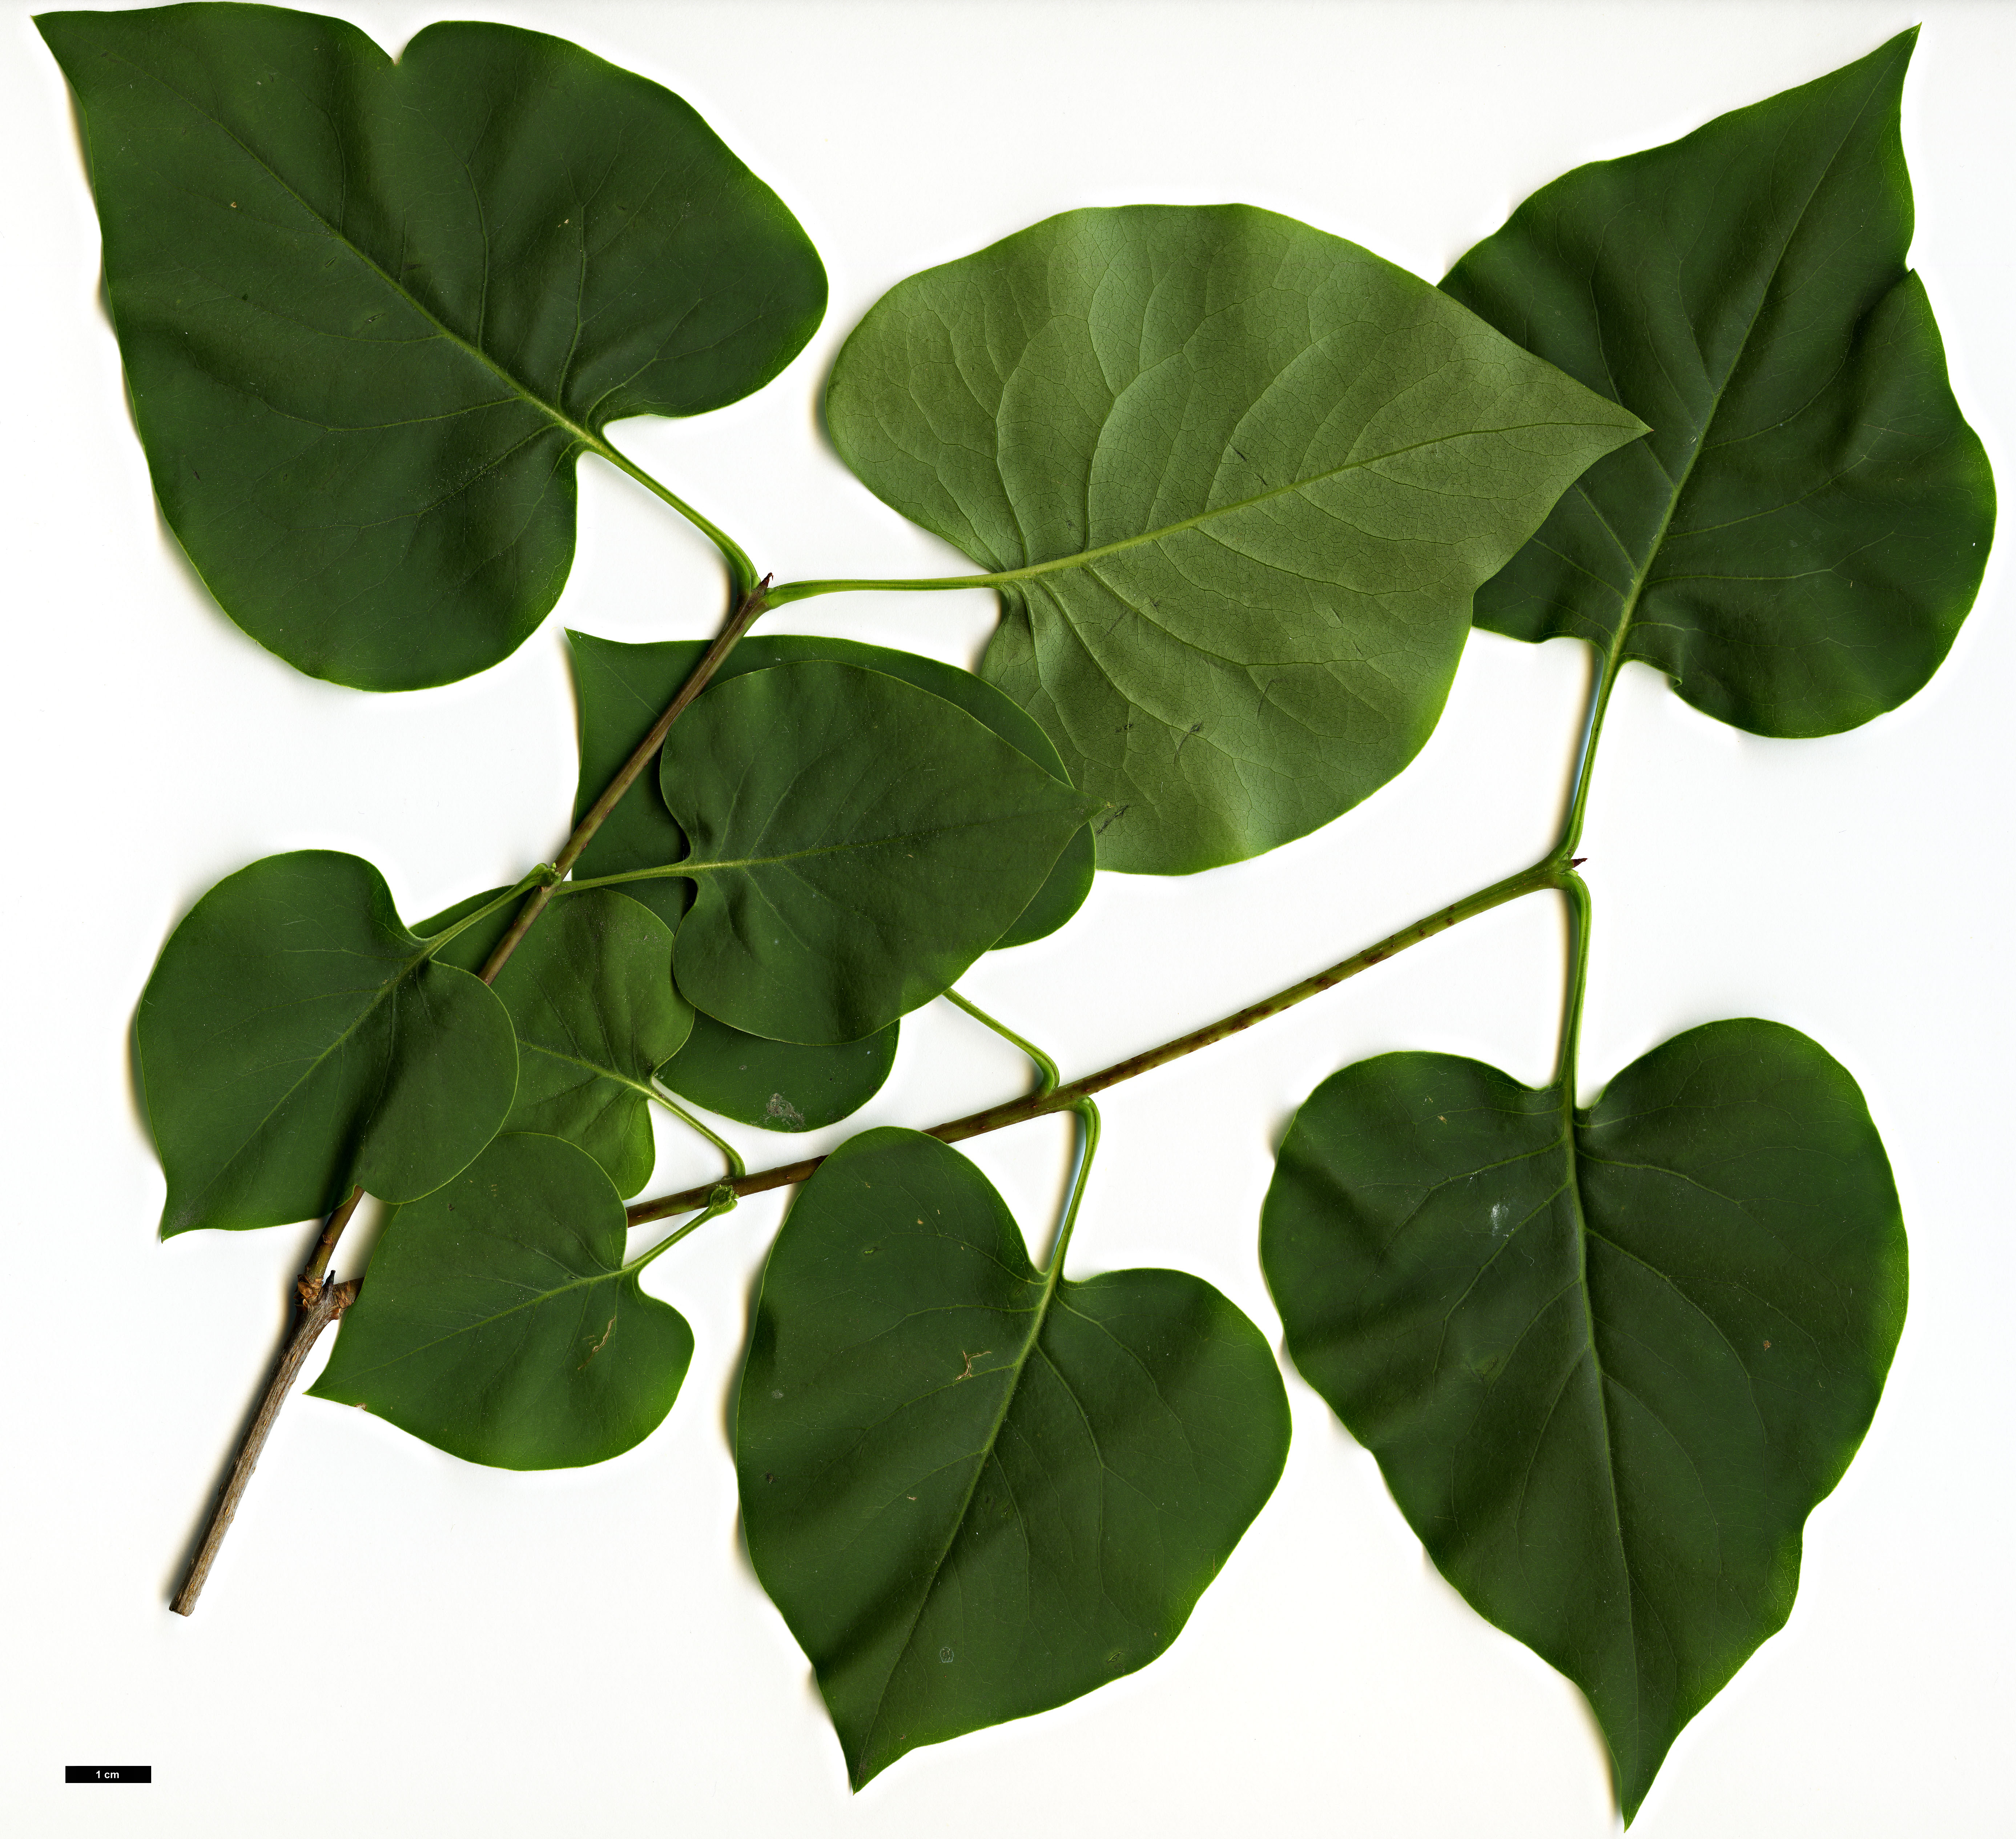 High resolution image: Family: Oleaceae - Genus: Syringa - Taxon: oblata - SpeciesSub: var. dilatata